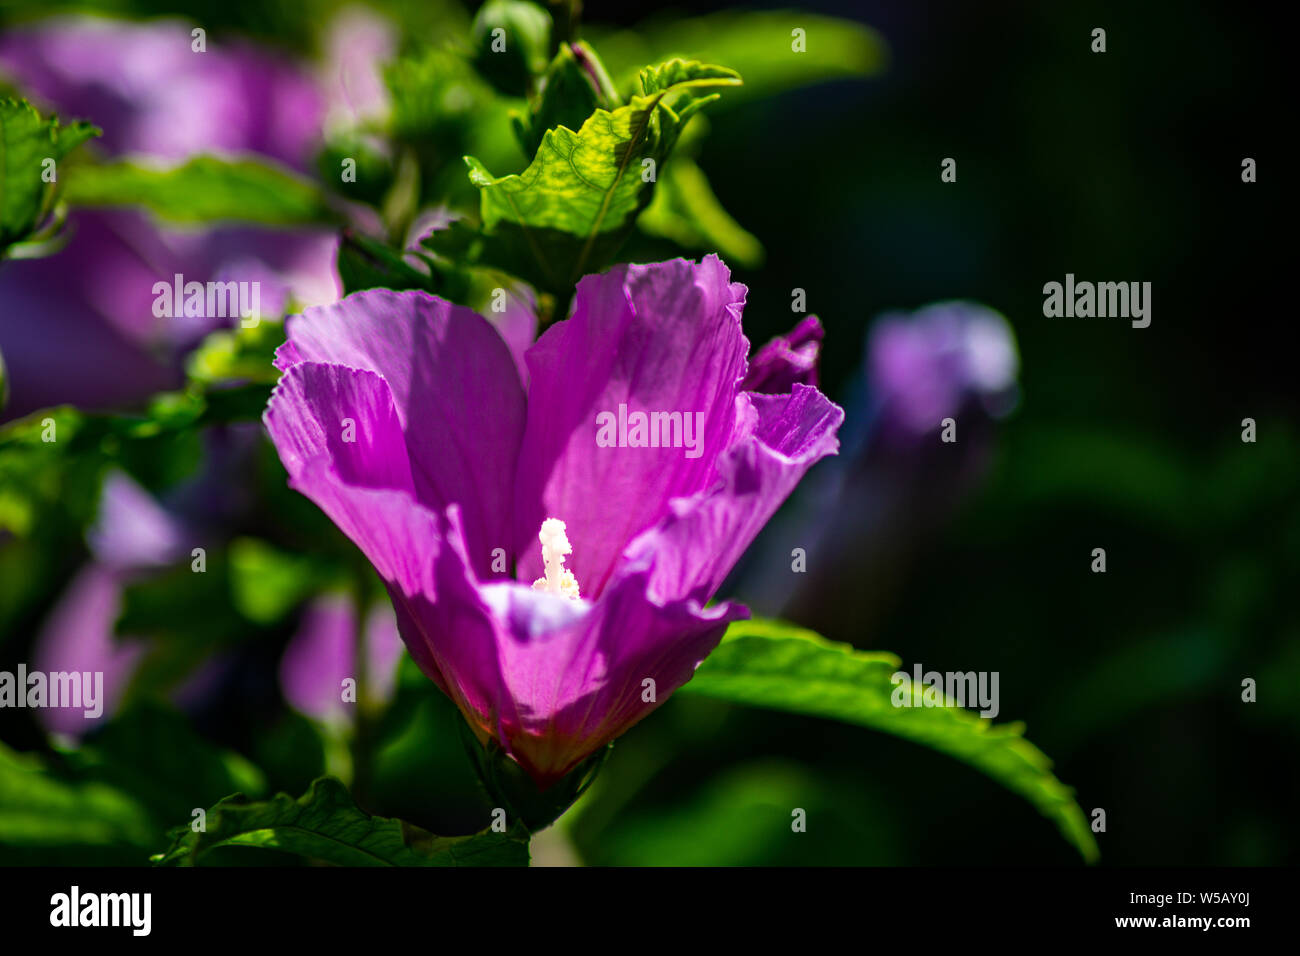 Violette, Malven, Sky, mit, weissem, Stempel, grüne, Blätter, im Garten Stockfoto